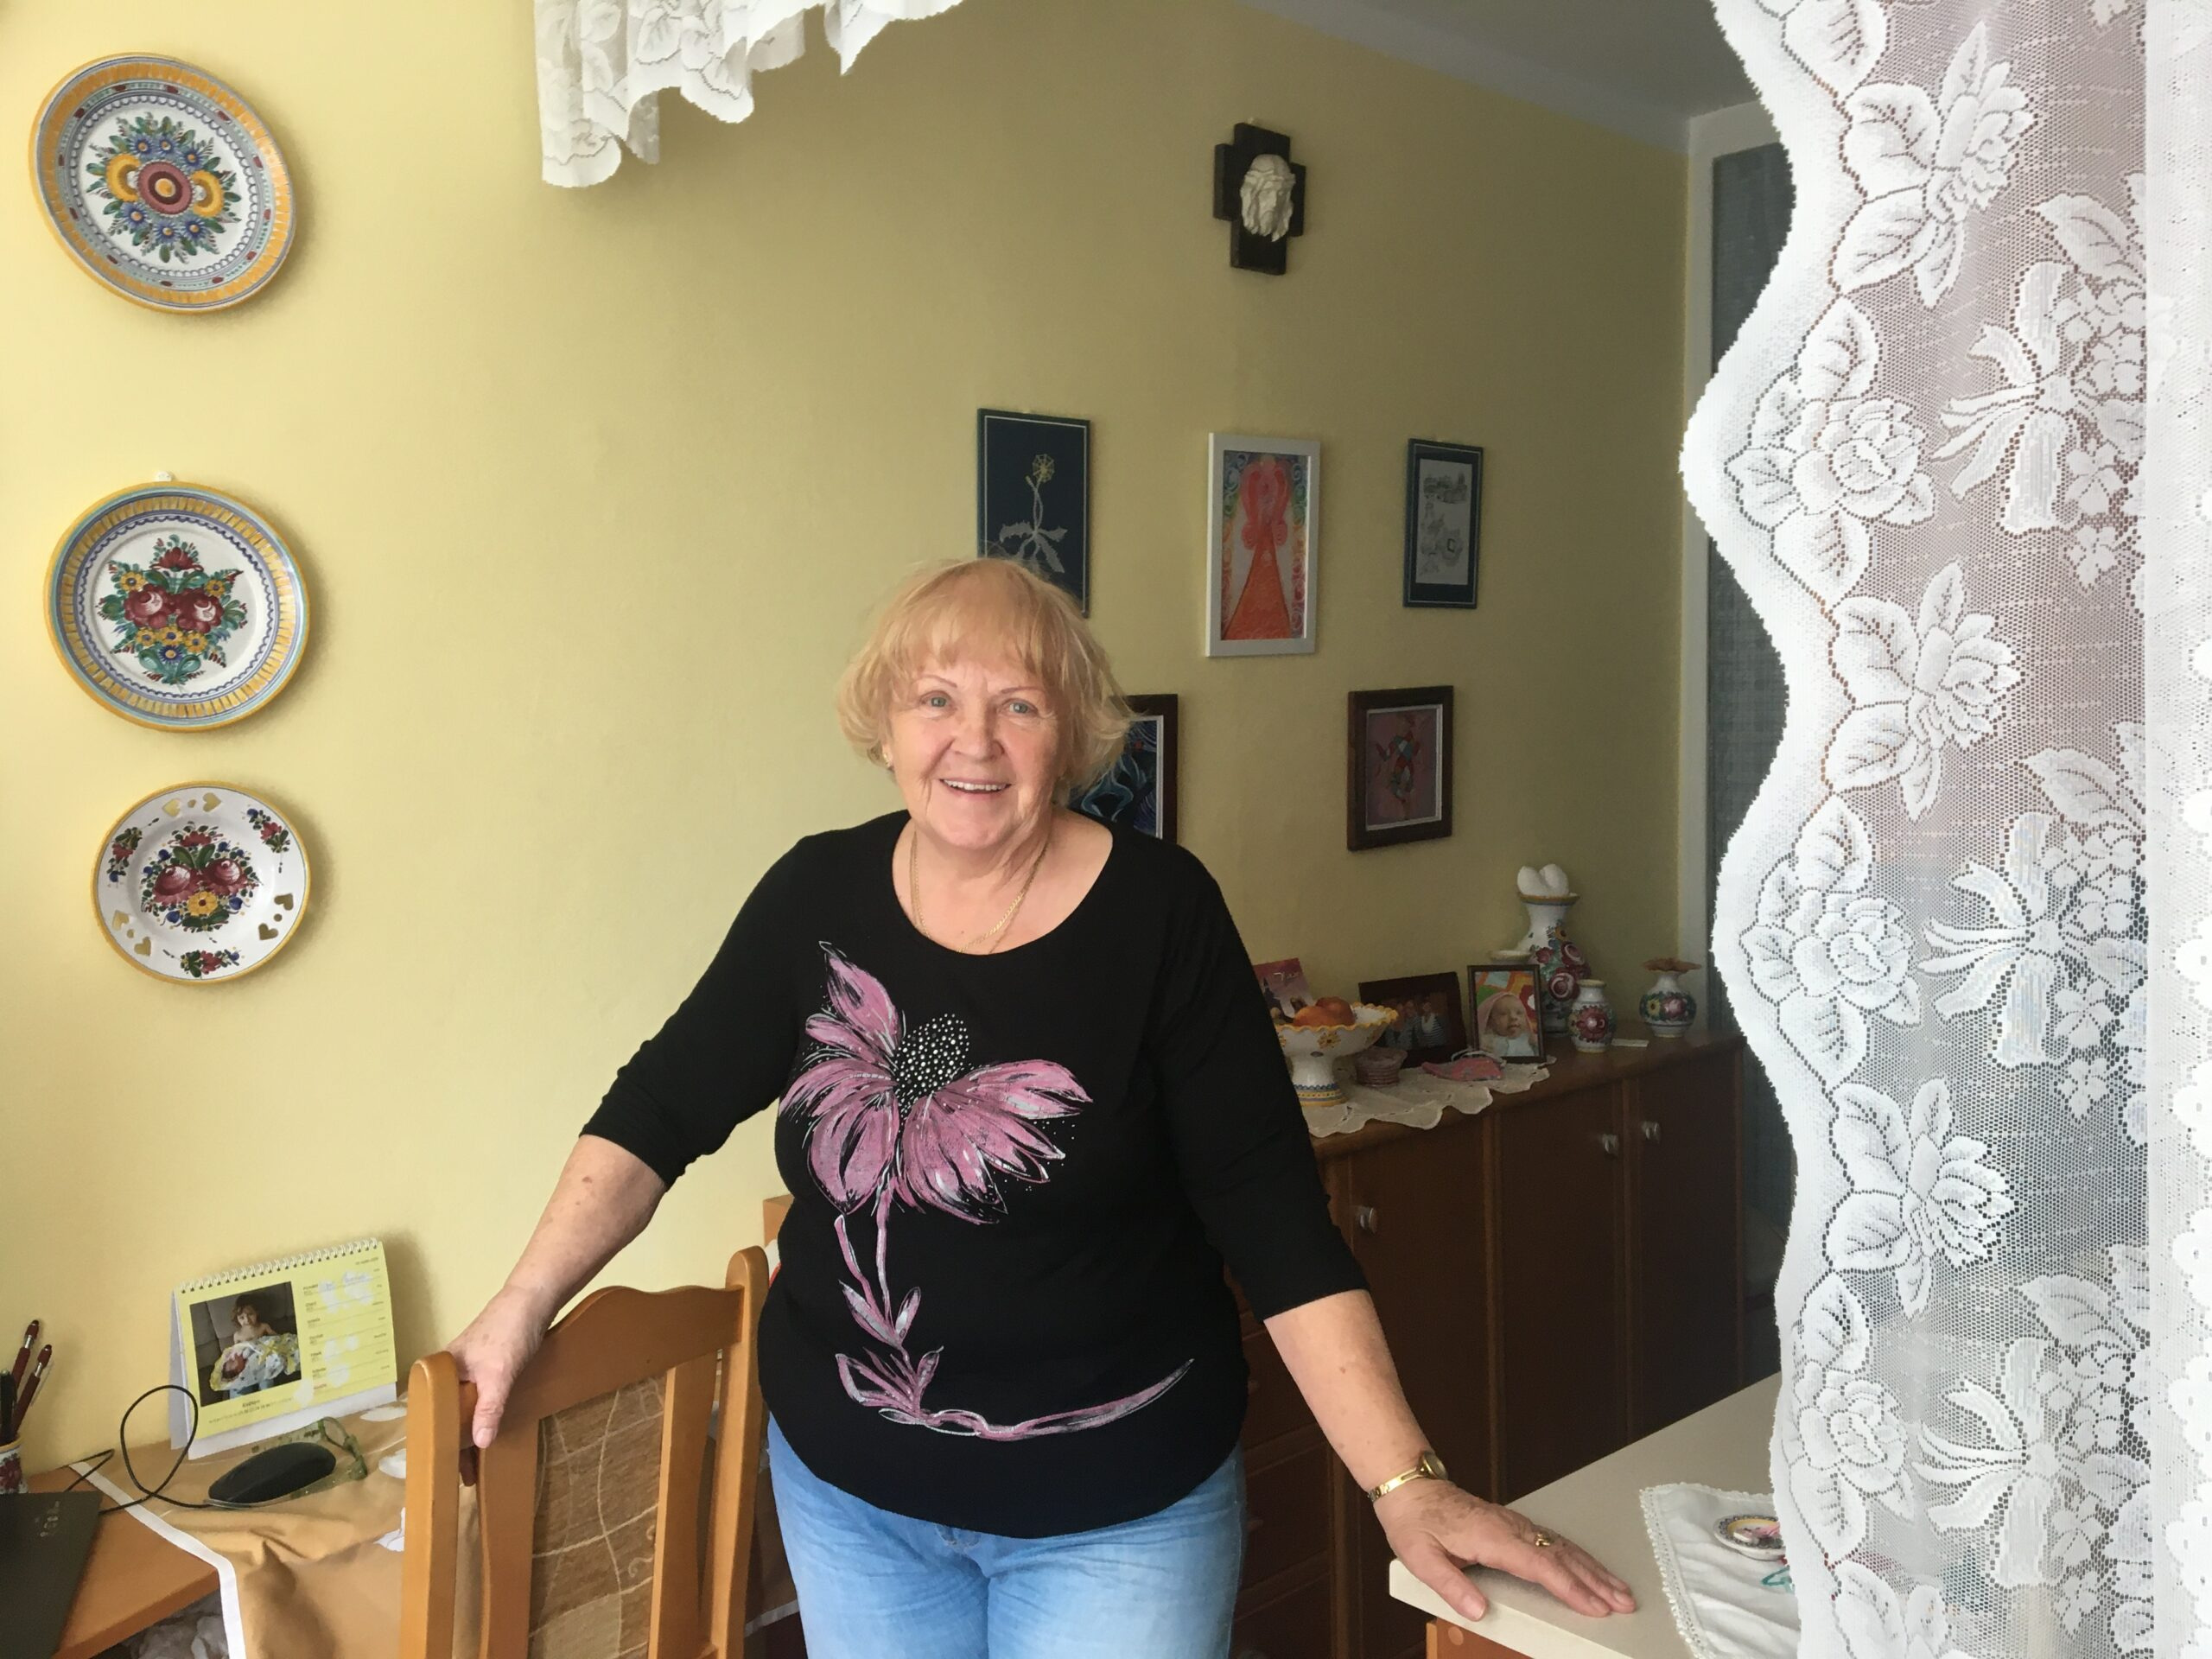 Zachraňovat životy pacientům s leukemií pomáhá Zdenka Wasserbauerová už dvacet tři let. Na snímku ve svém bytě na otrokovickém sídlišti.